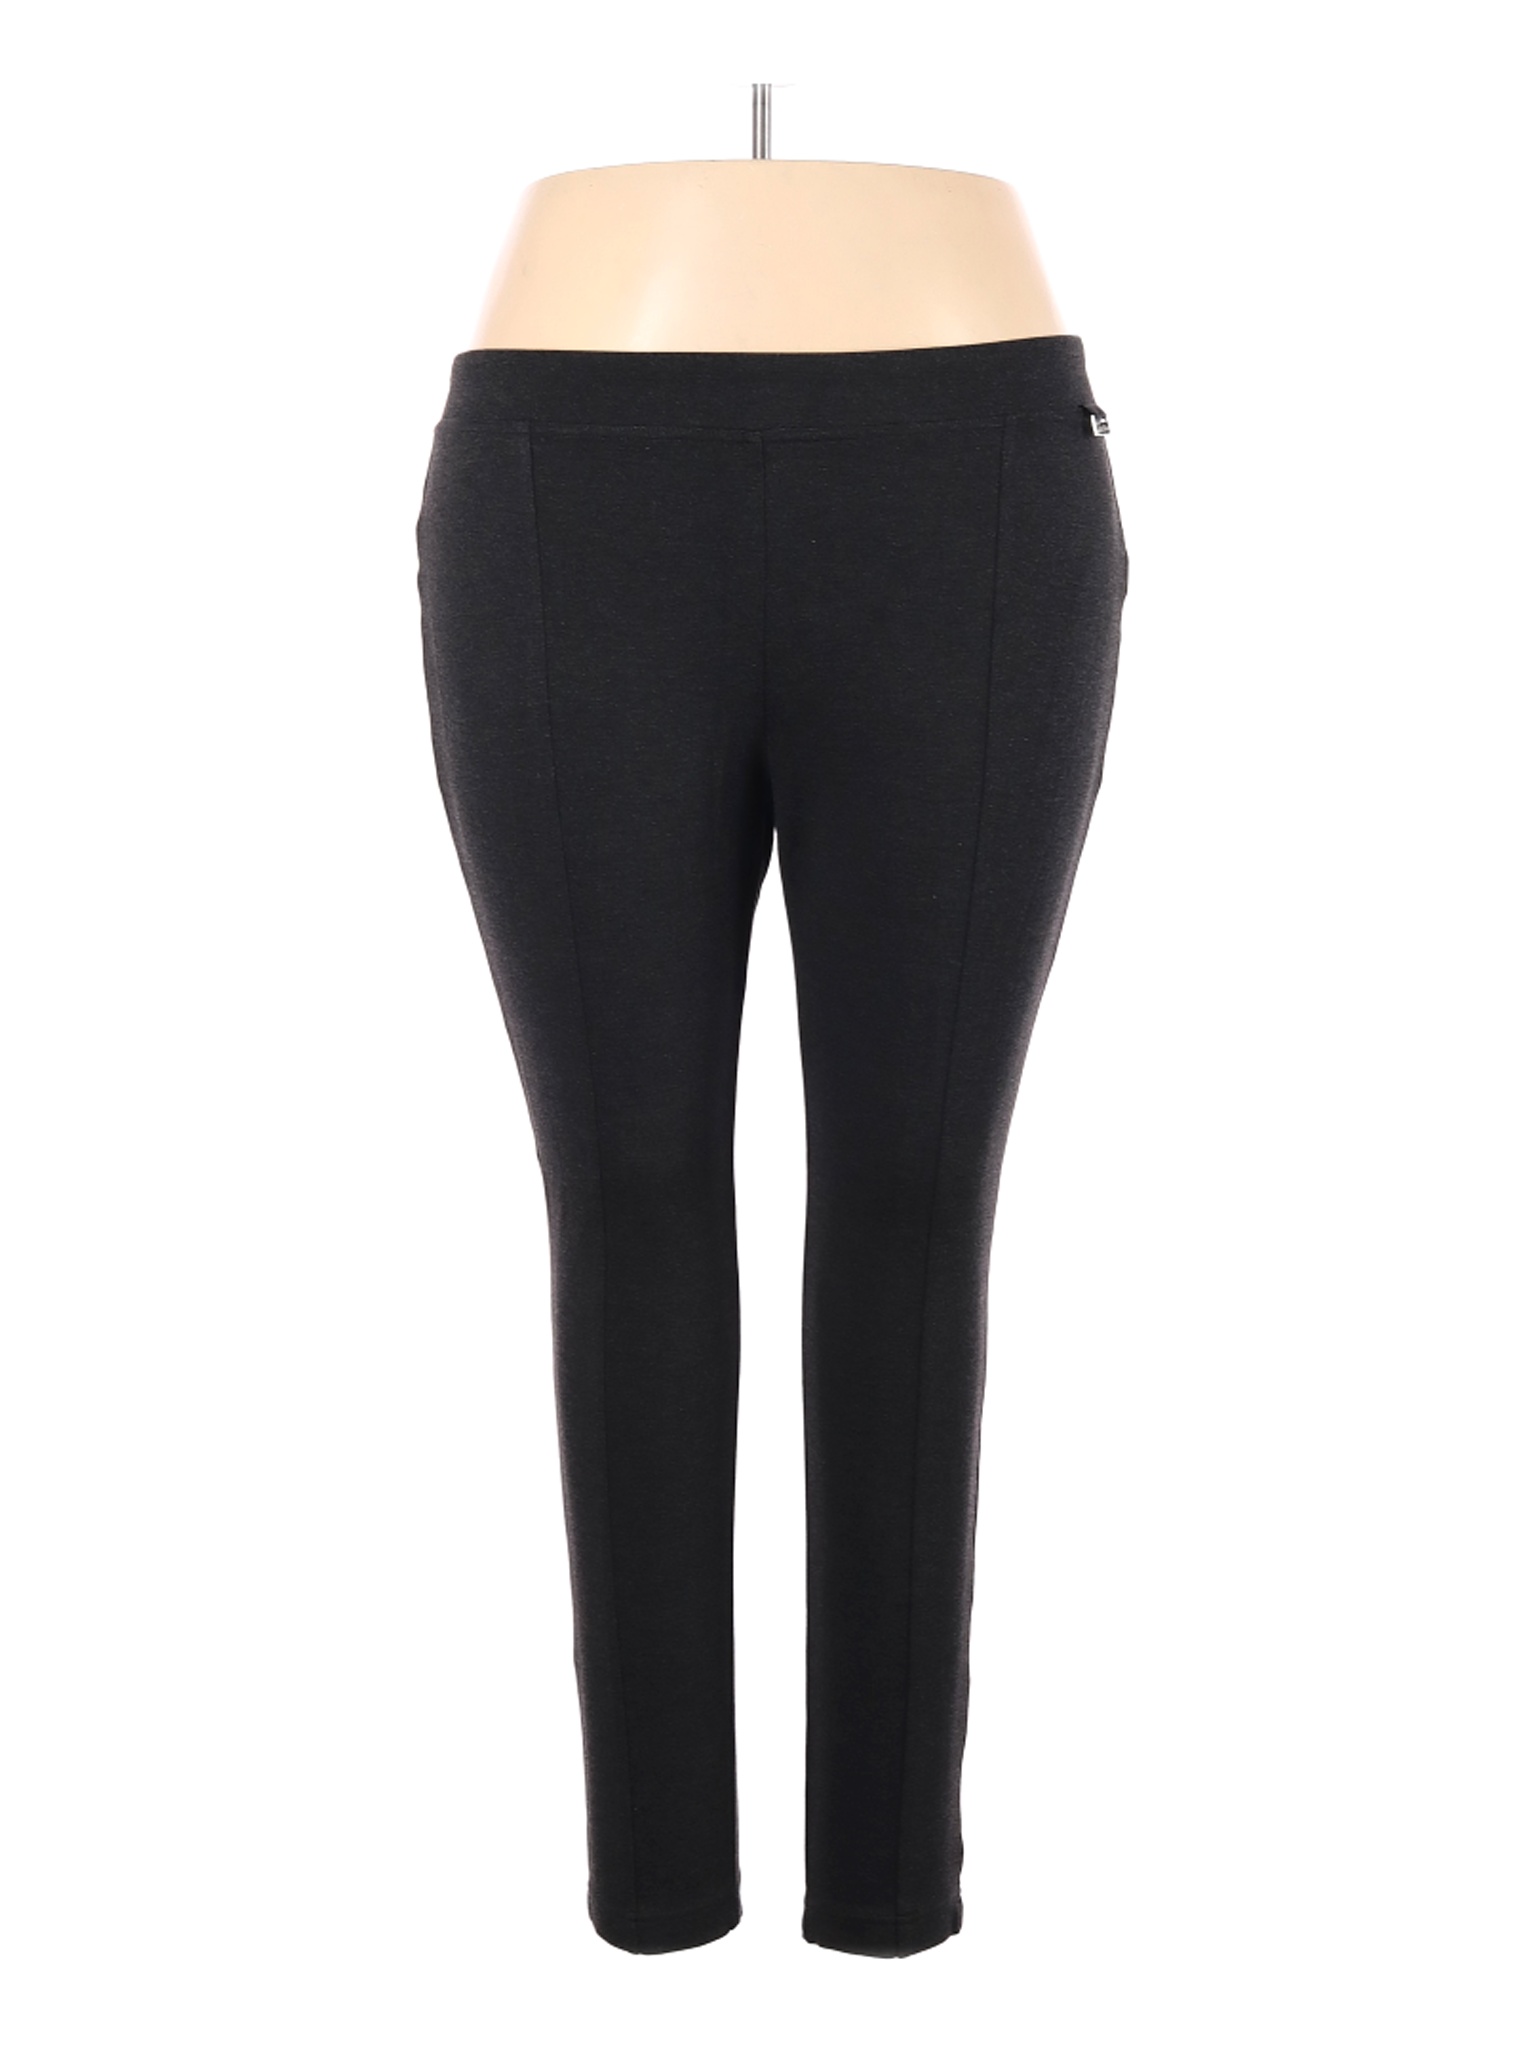 Calvin Klein Women Black Casual Pants 1X Plus | eBay